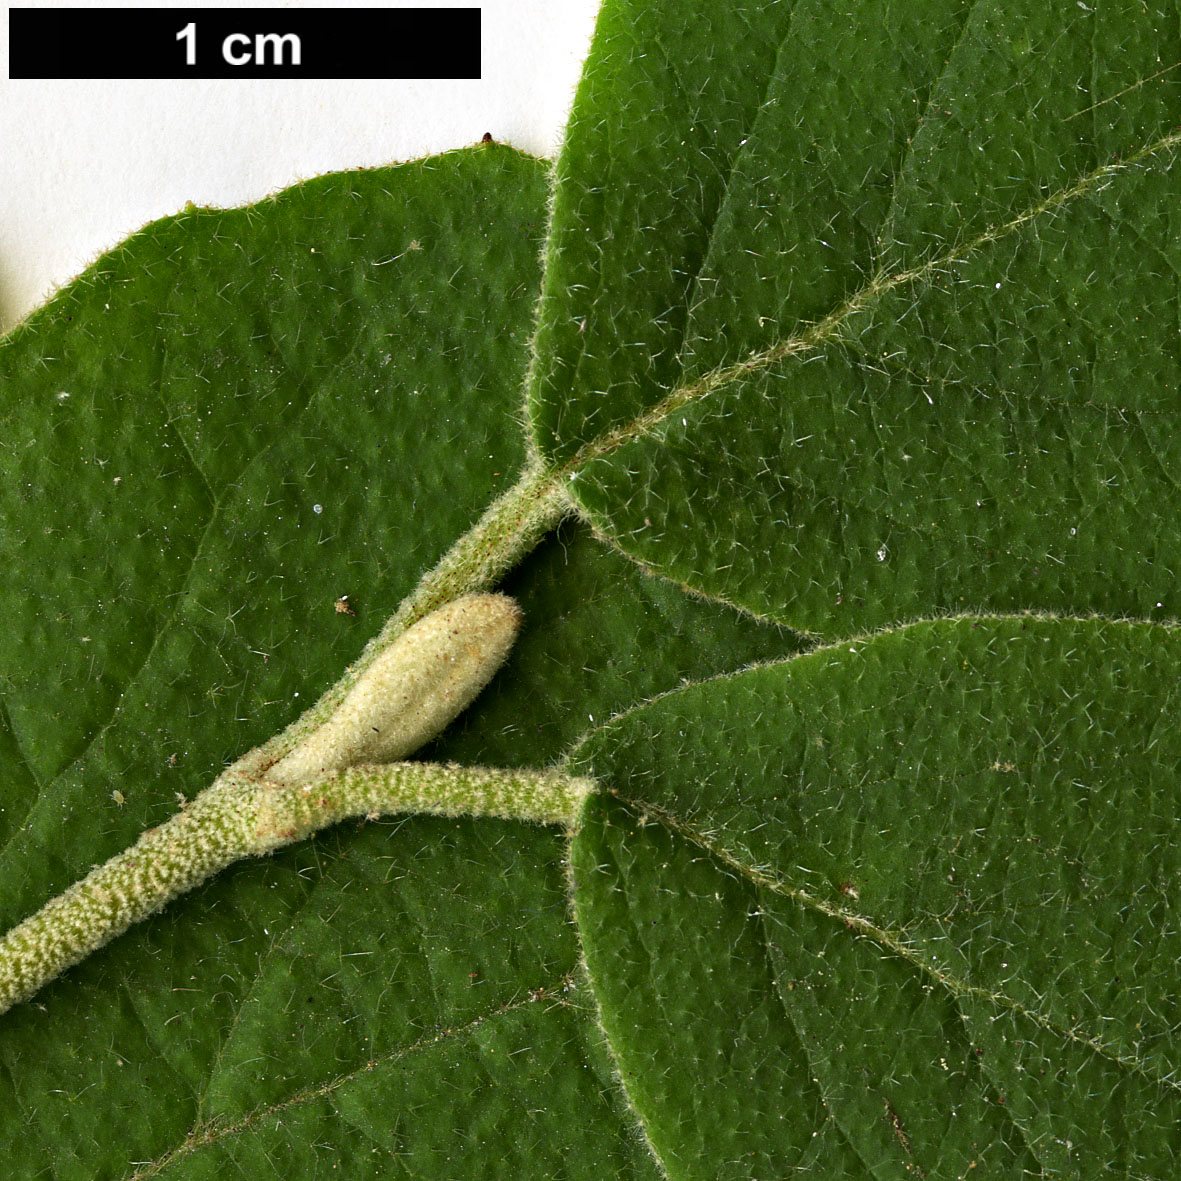 High resolution image: Family: Adoxaceae - Genus: Viburnum - Taxon: schensianum